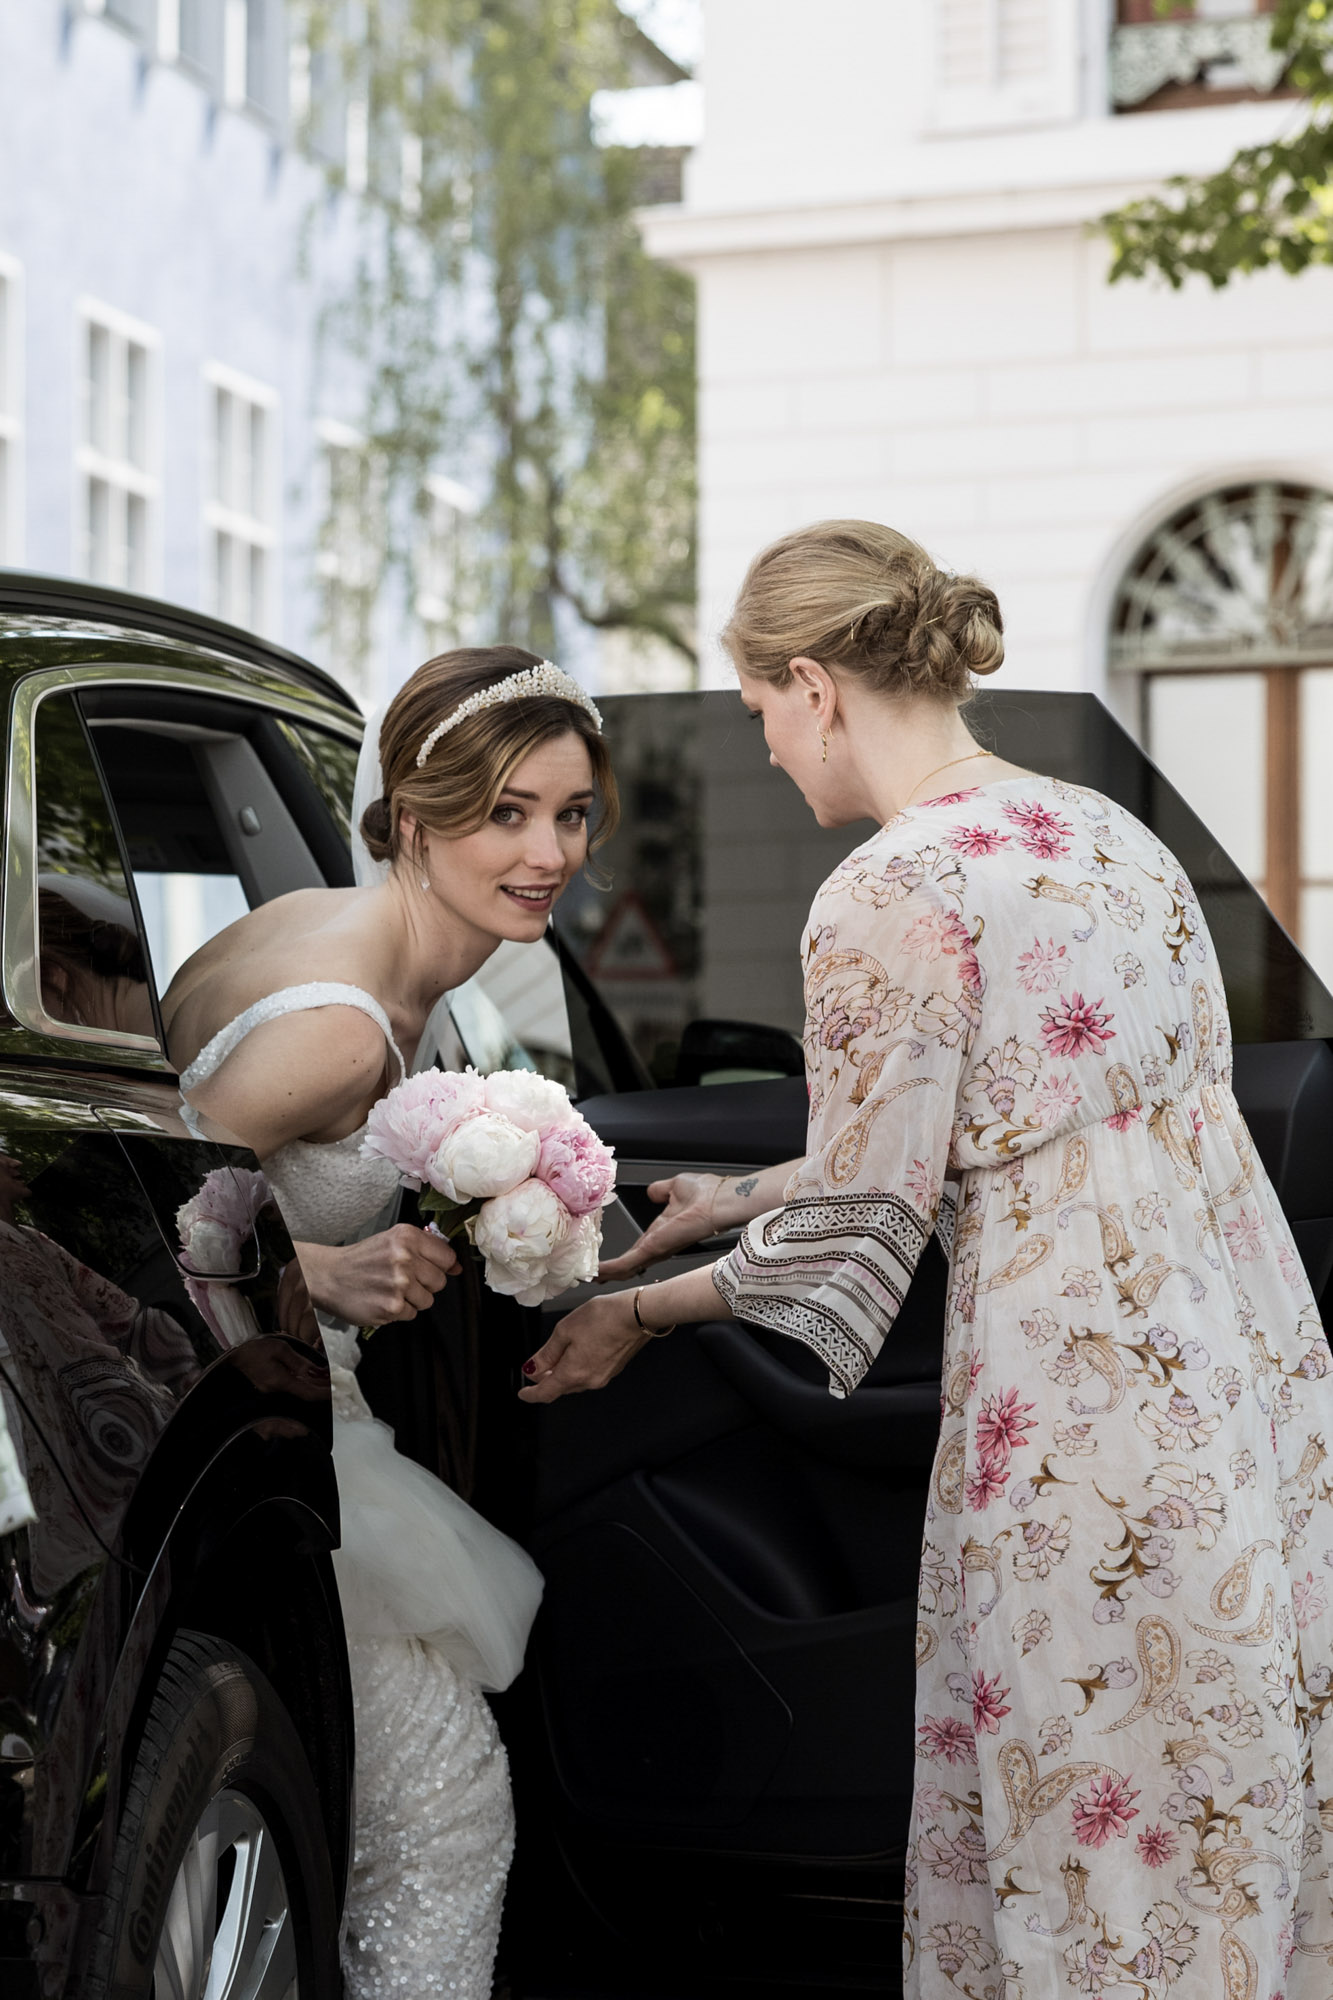 Die Braut steigt aus dem Auto - Hochzeitsfotografen Basel